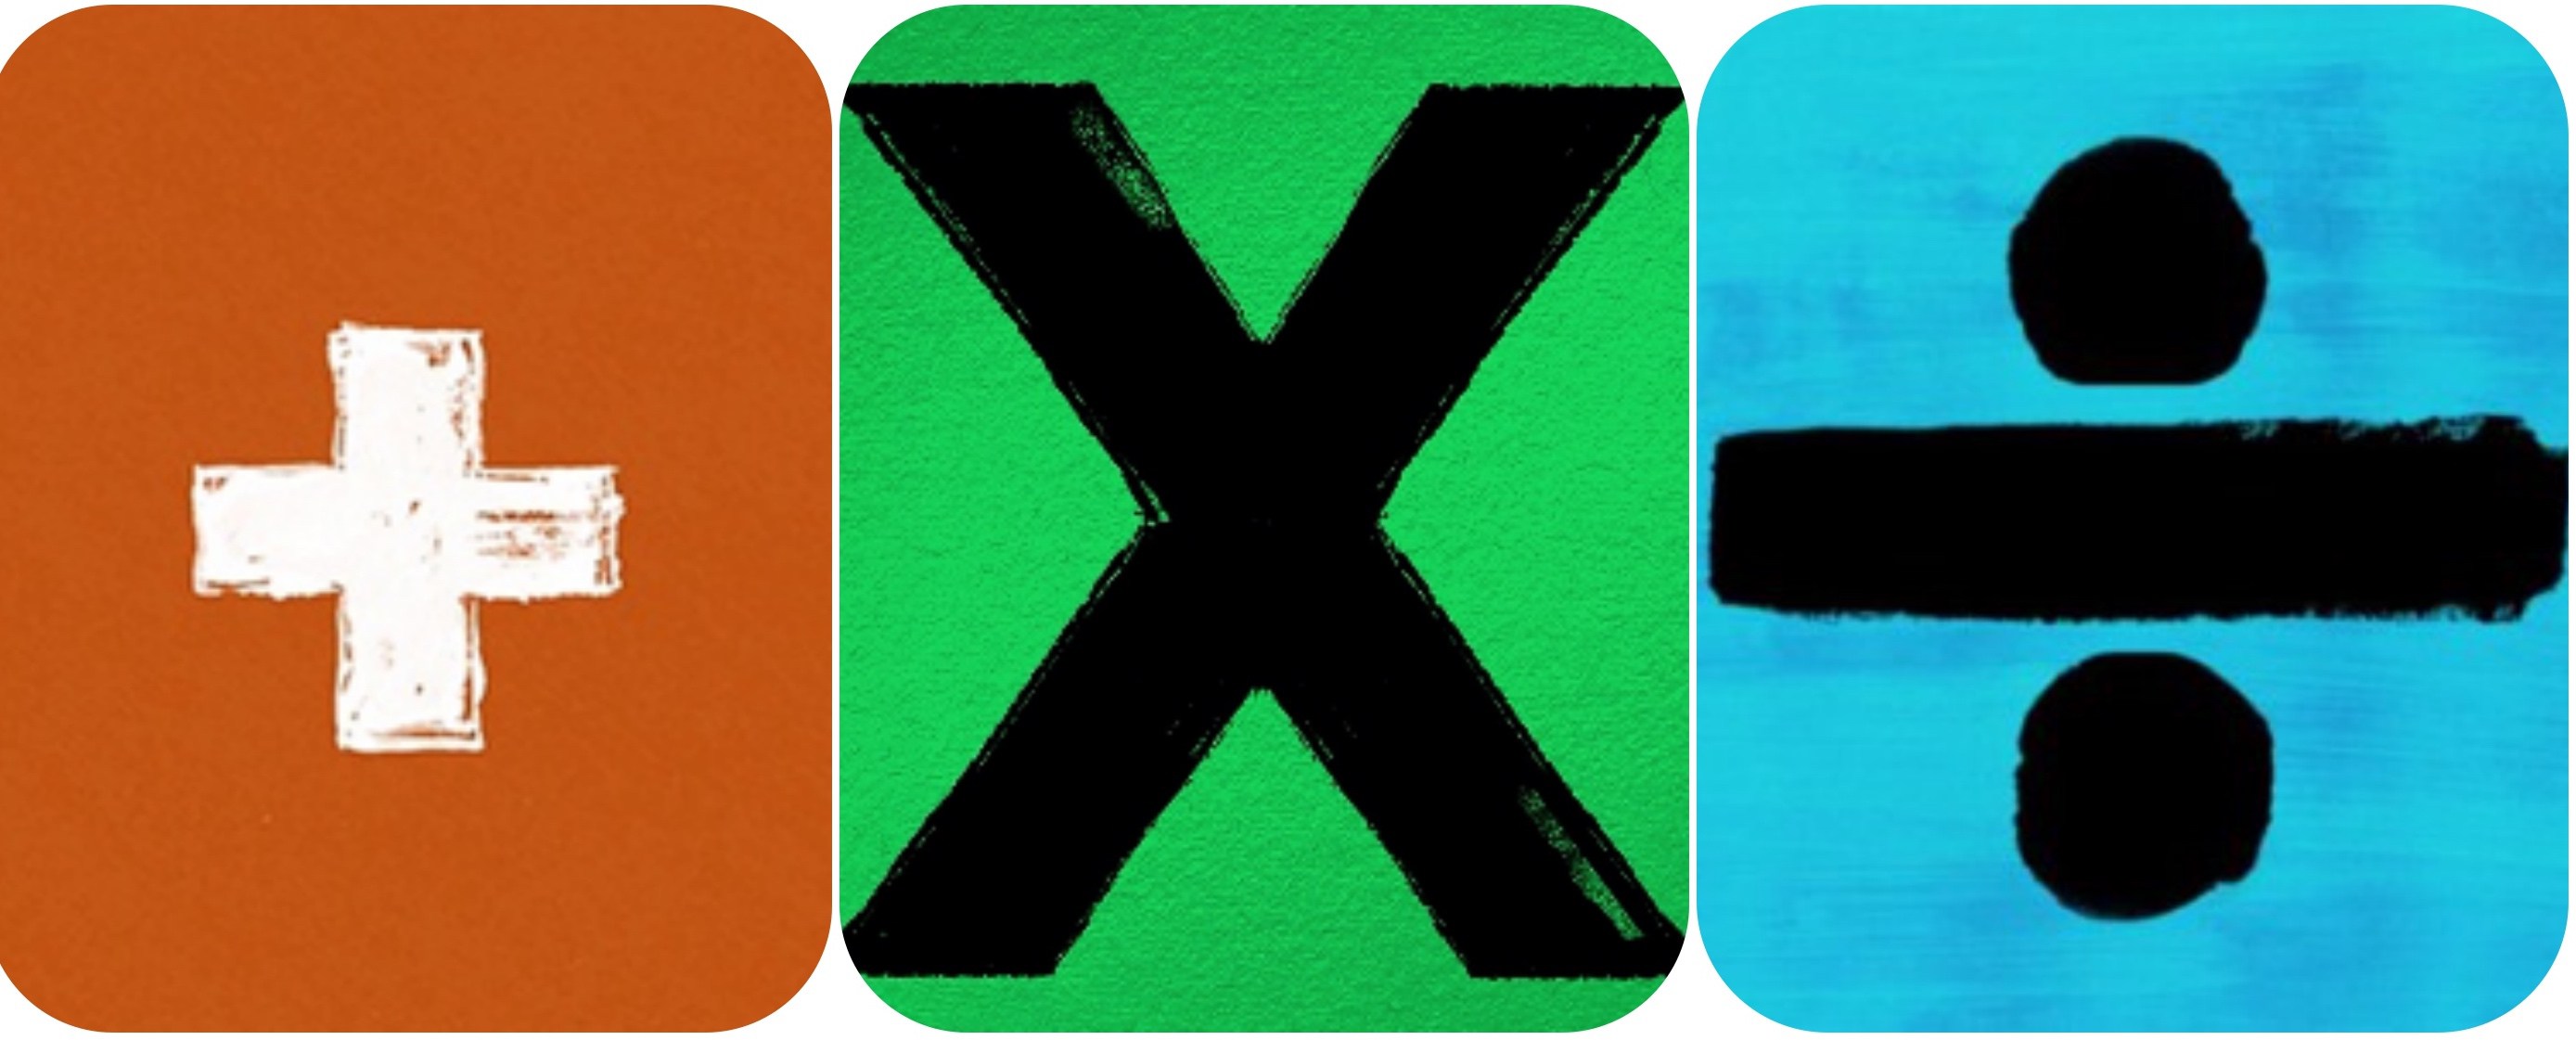 Ed Sheeran Logos